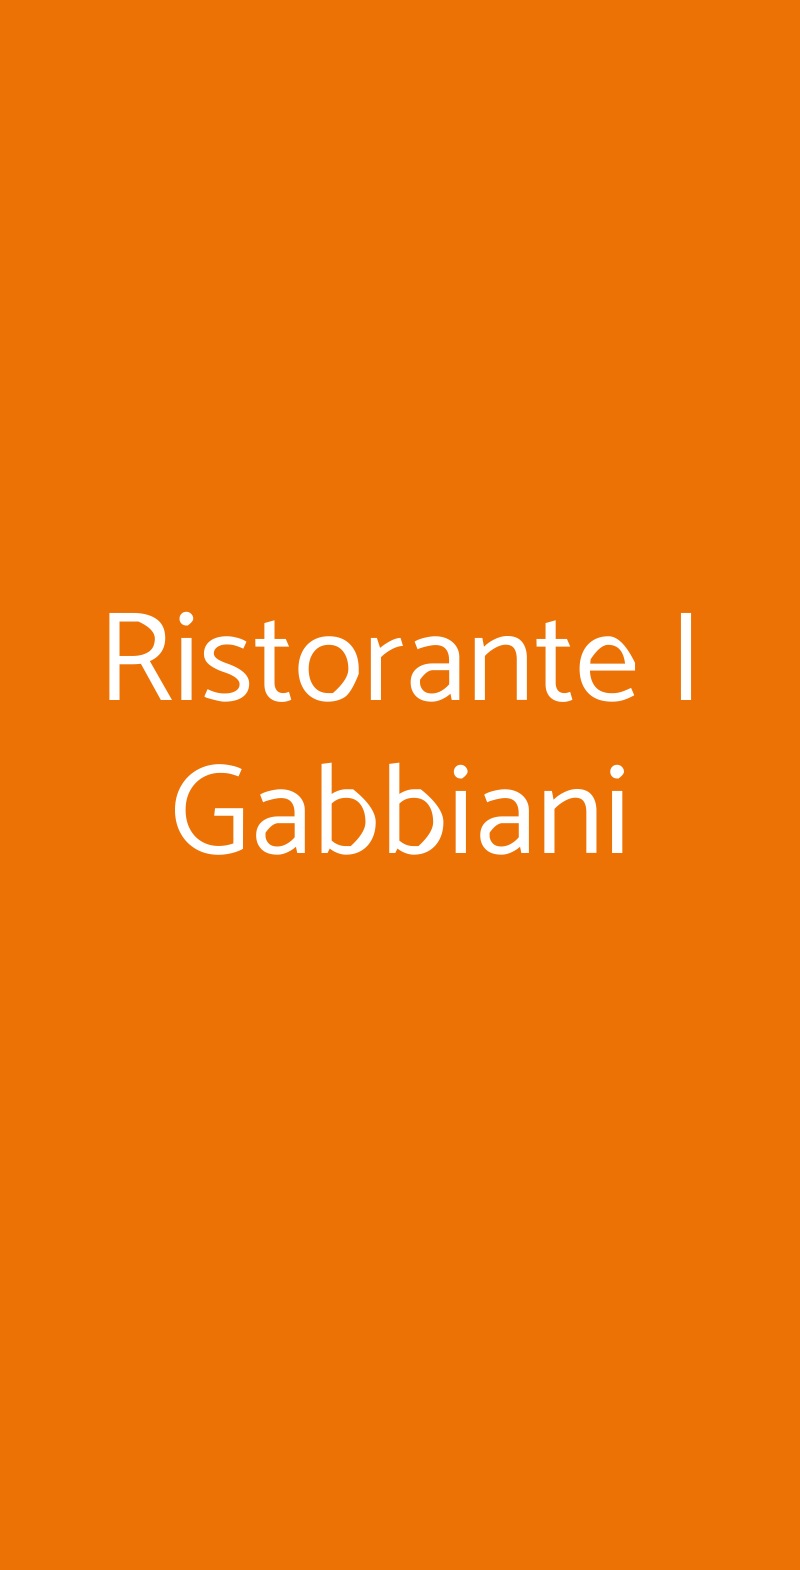 Ristorante I Gabbiani Roma menù 1 pagina